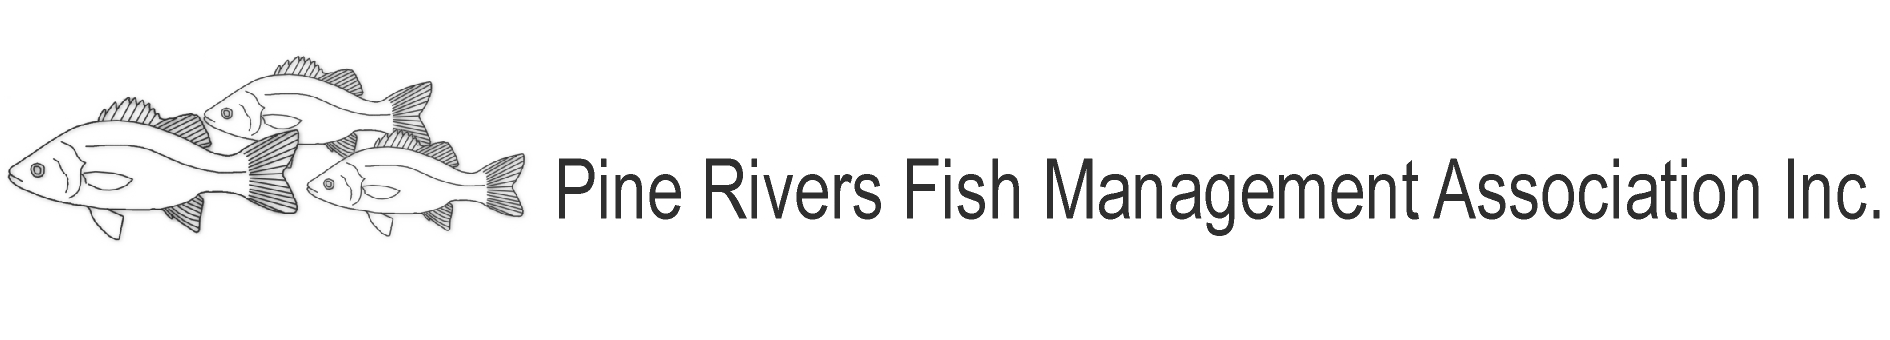 Pine Rivers Fish Management Association